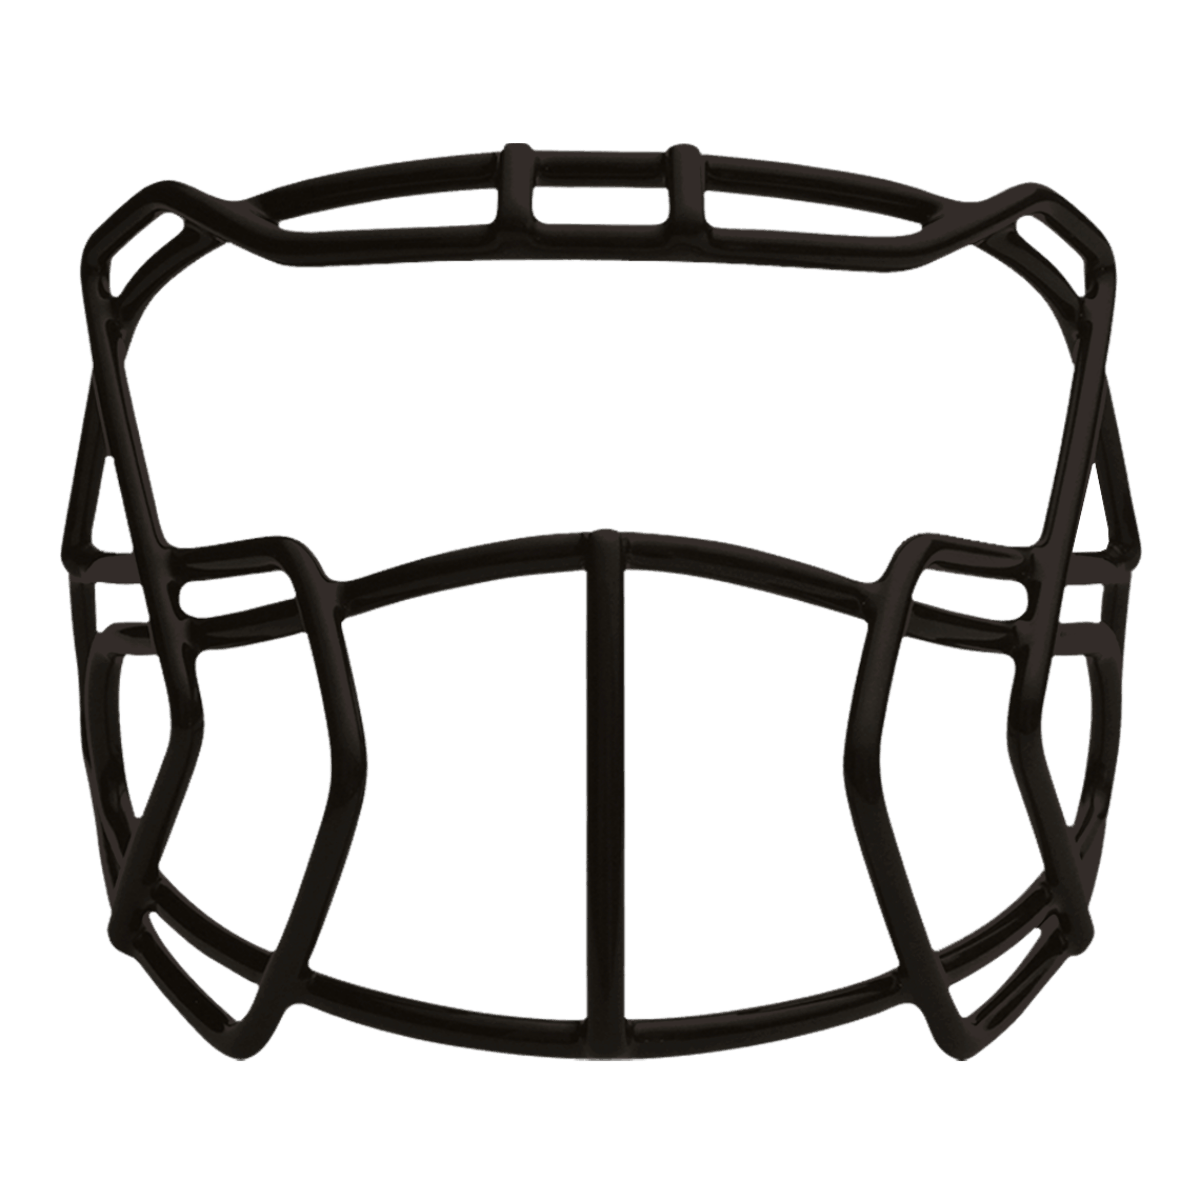 Black Prime face mask for football helmet.